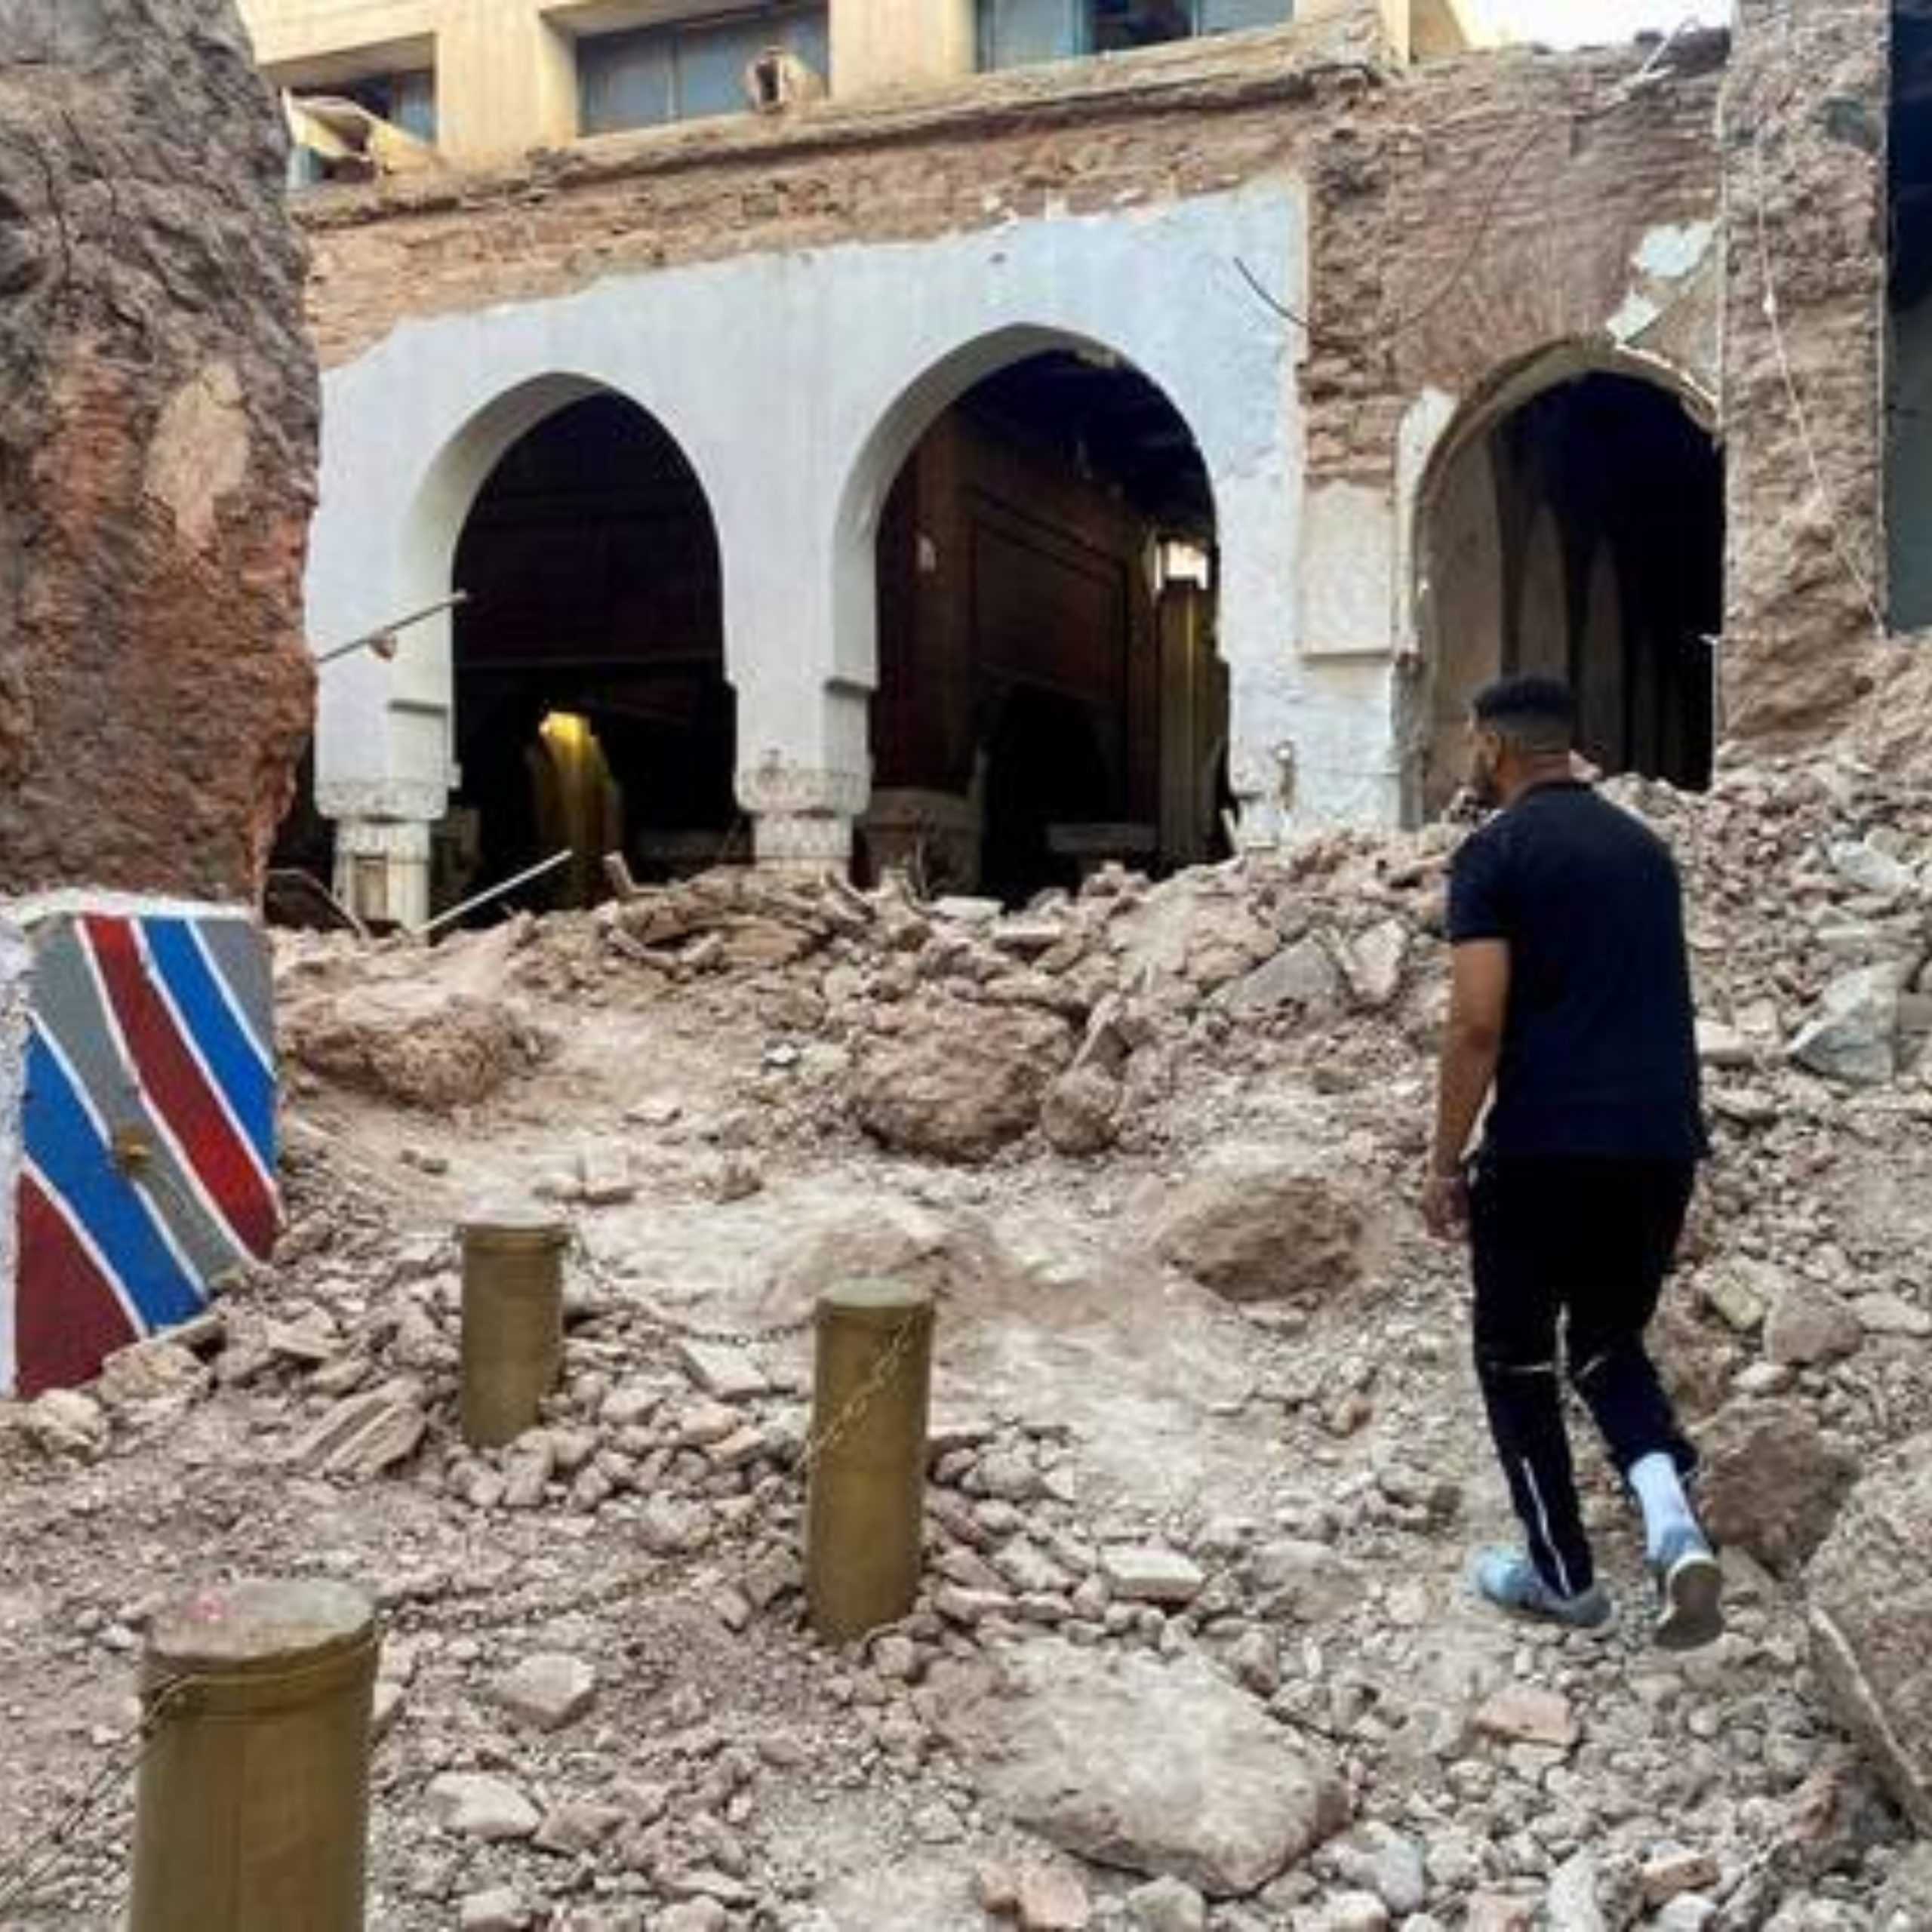  terremoto no marrocos 